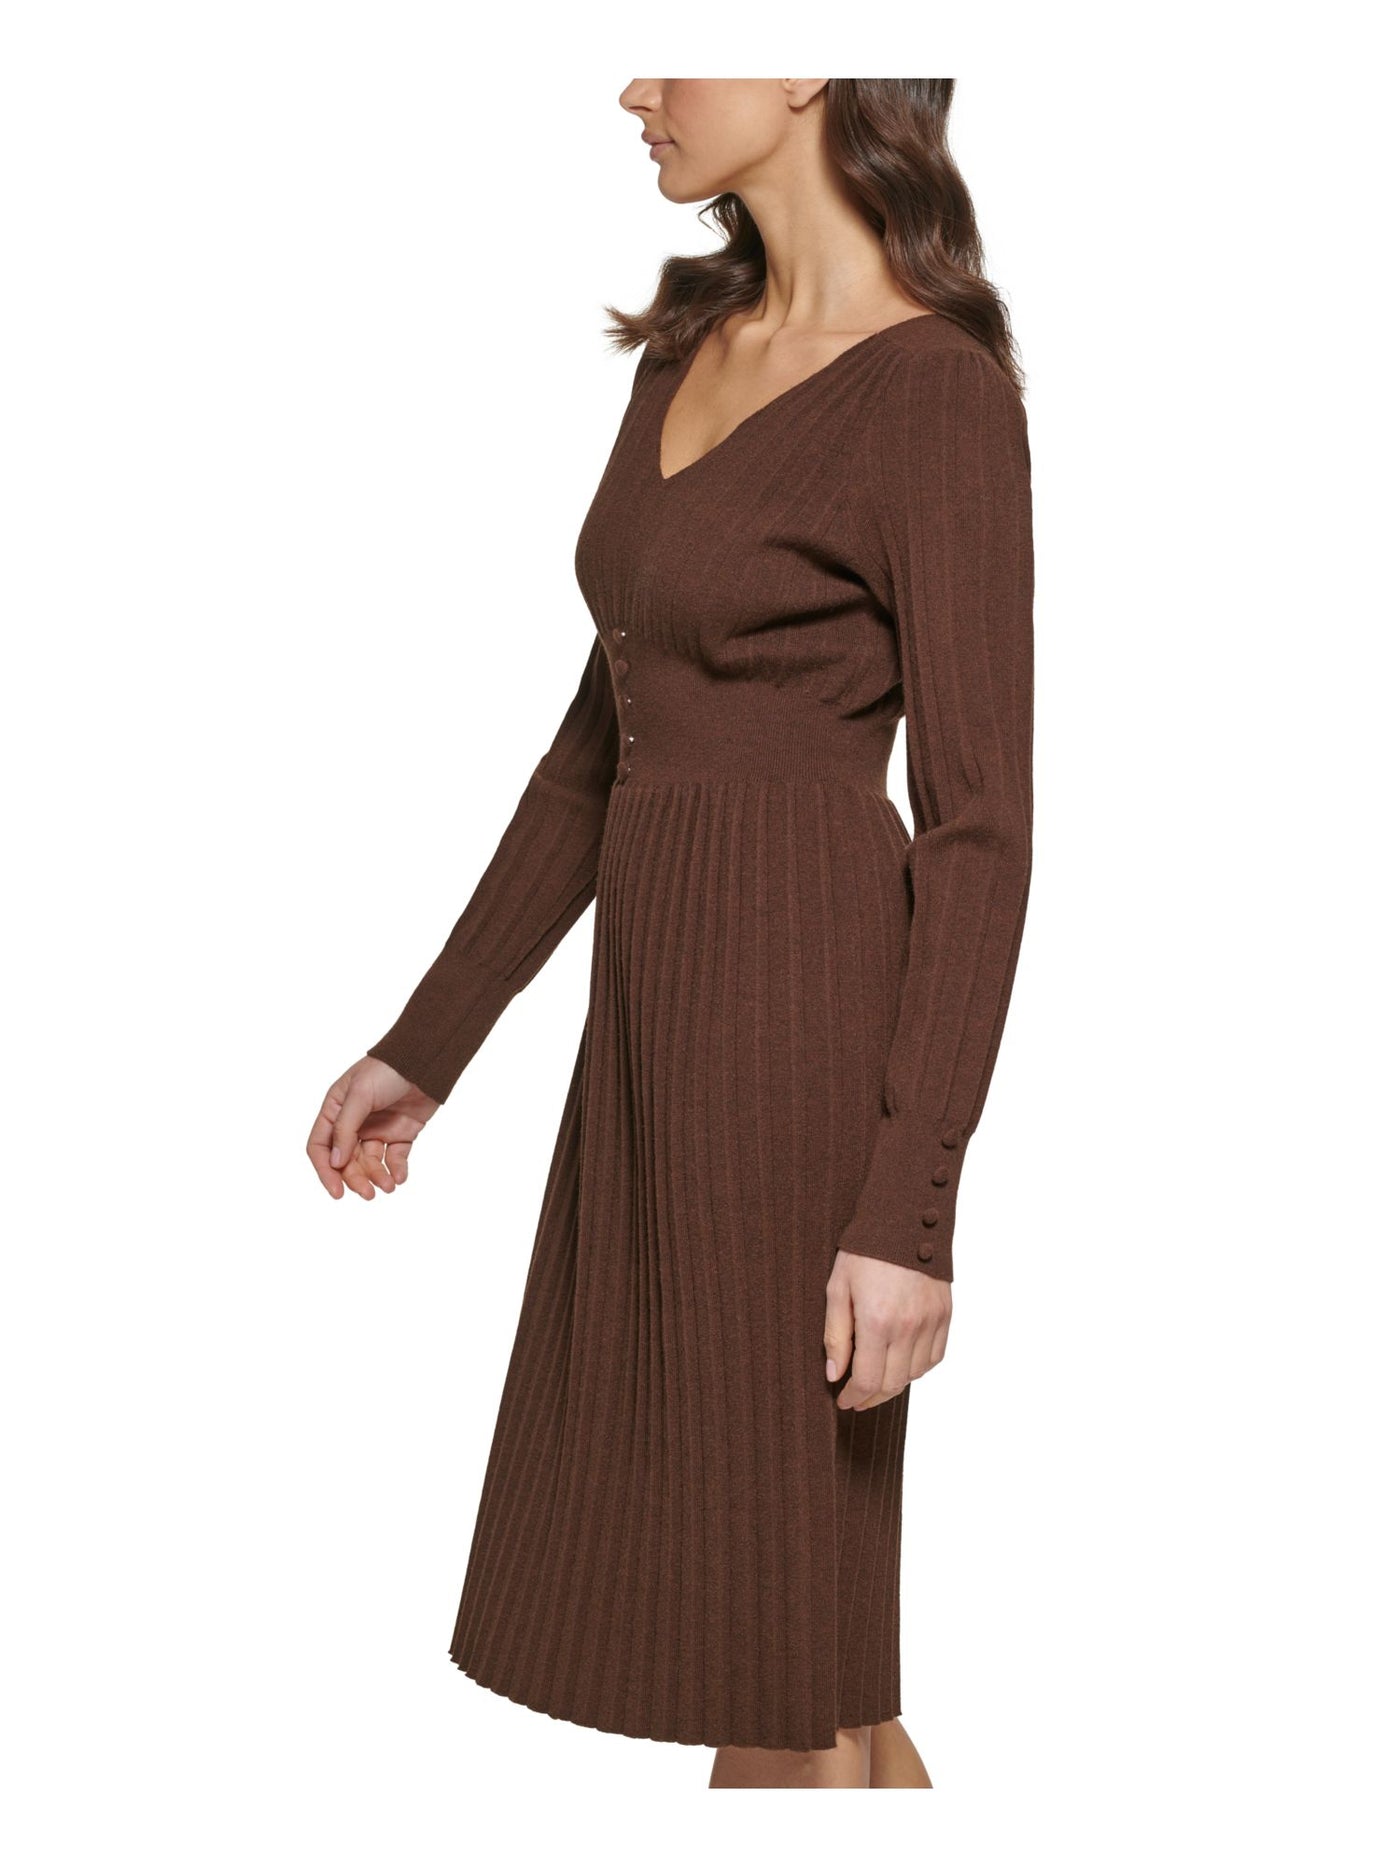 KENSIE DRESSES Womens Brown Long Sleeve V Neck Below The Knee Wear To Work Sweater Dress S